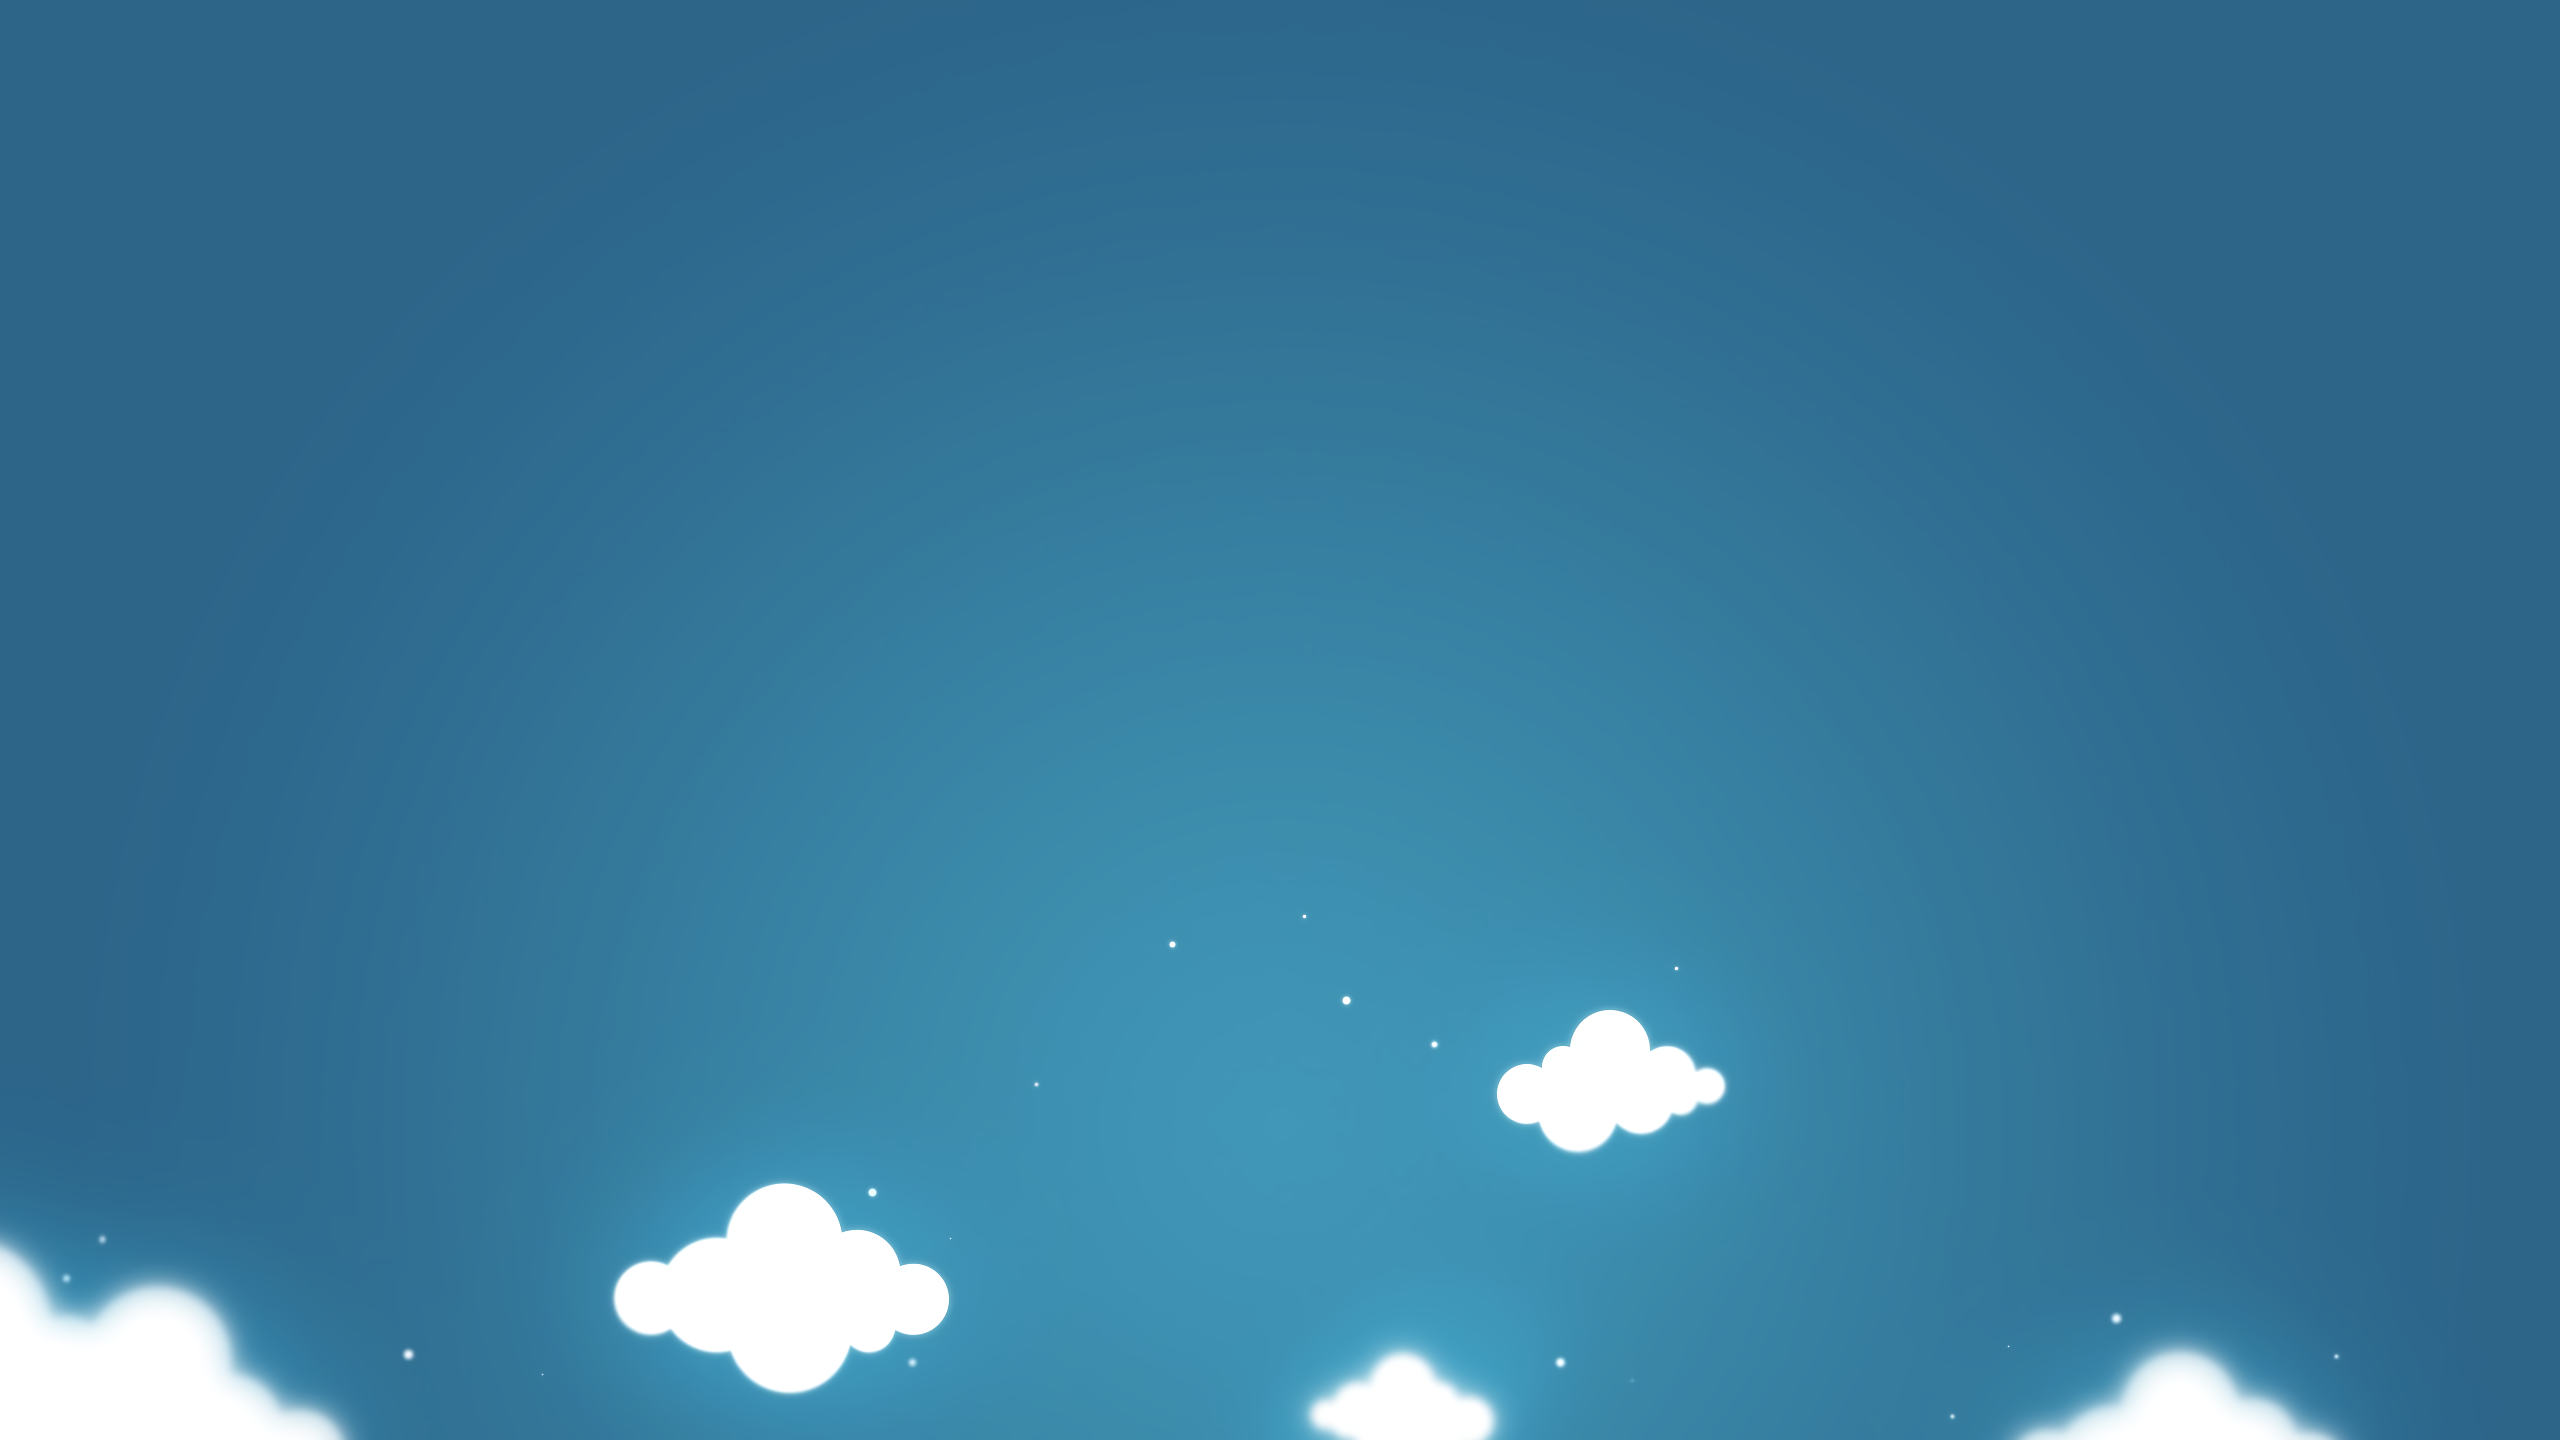 Blue Cloud Minimalist 2560x1440